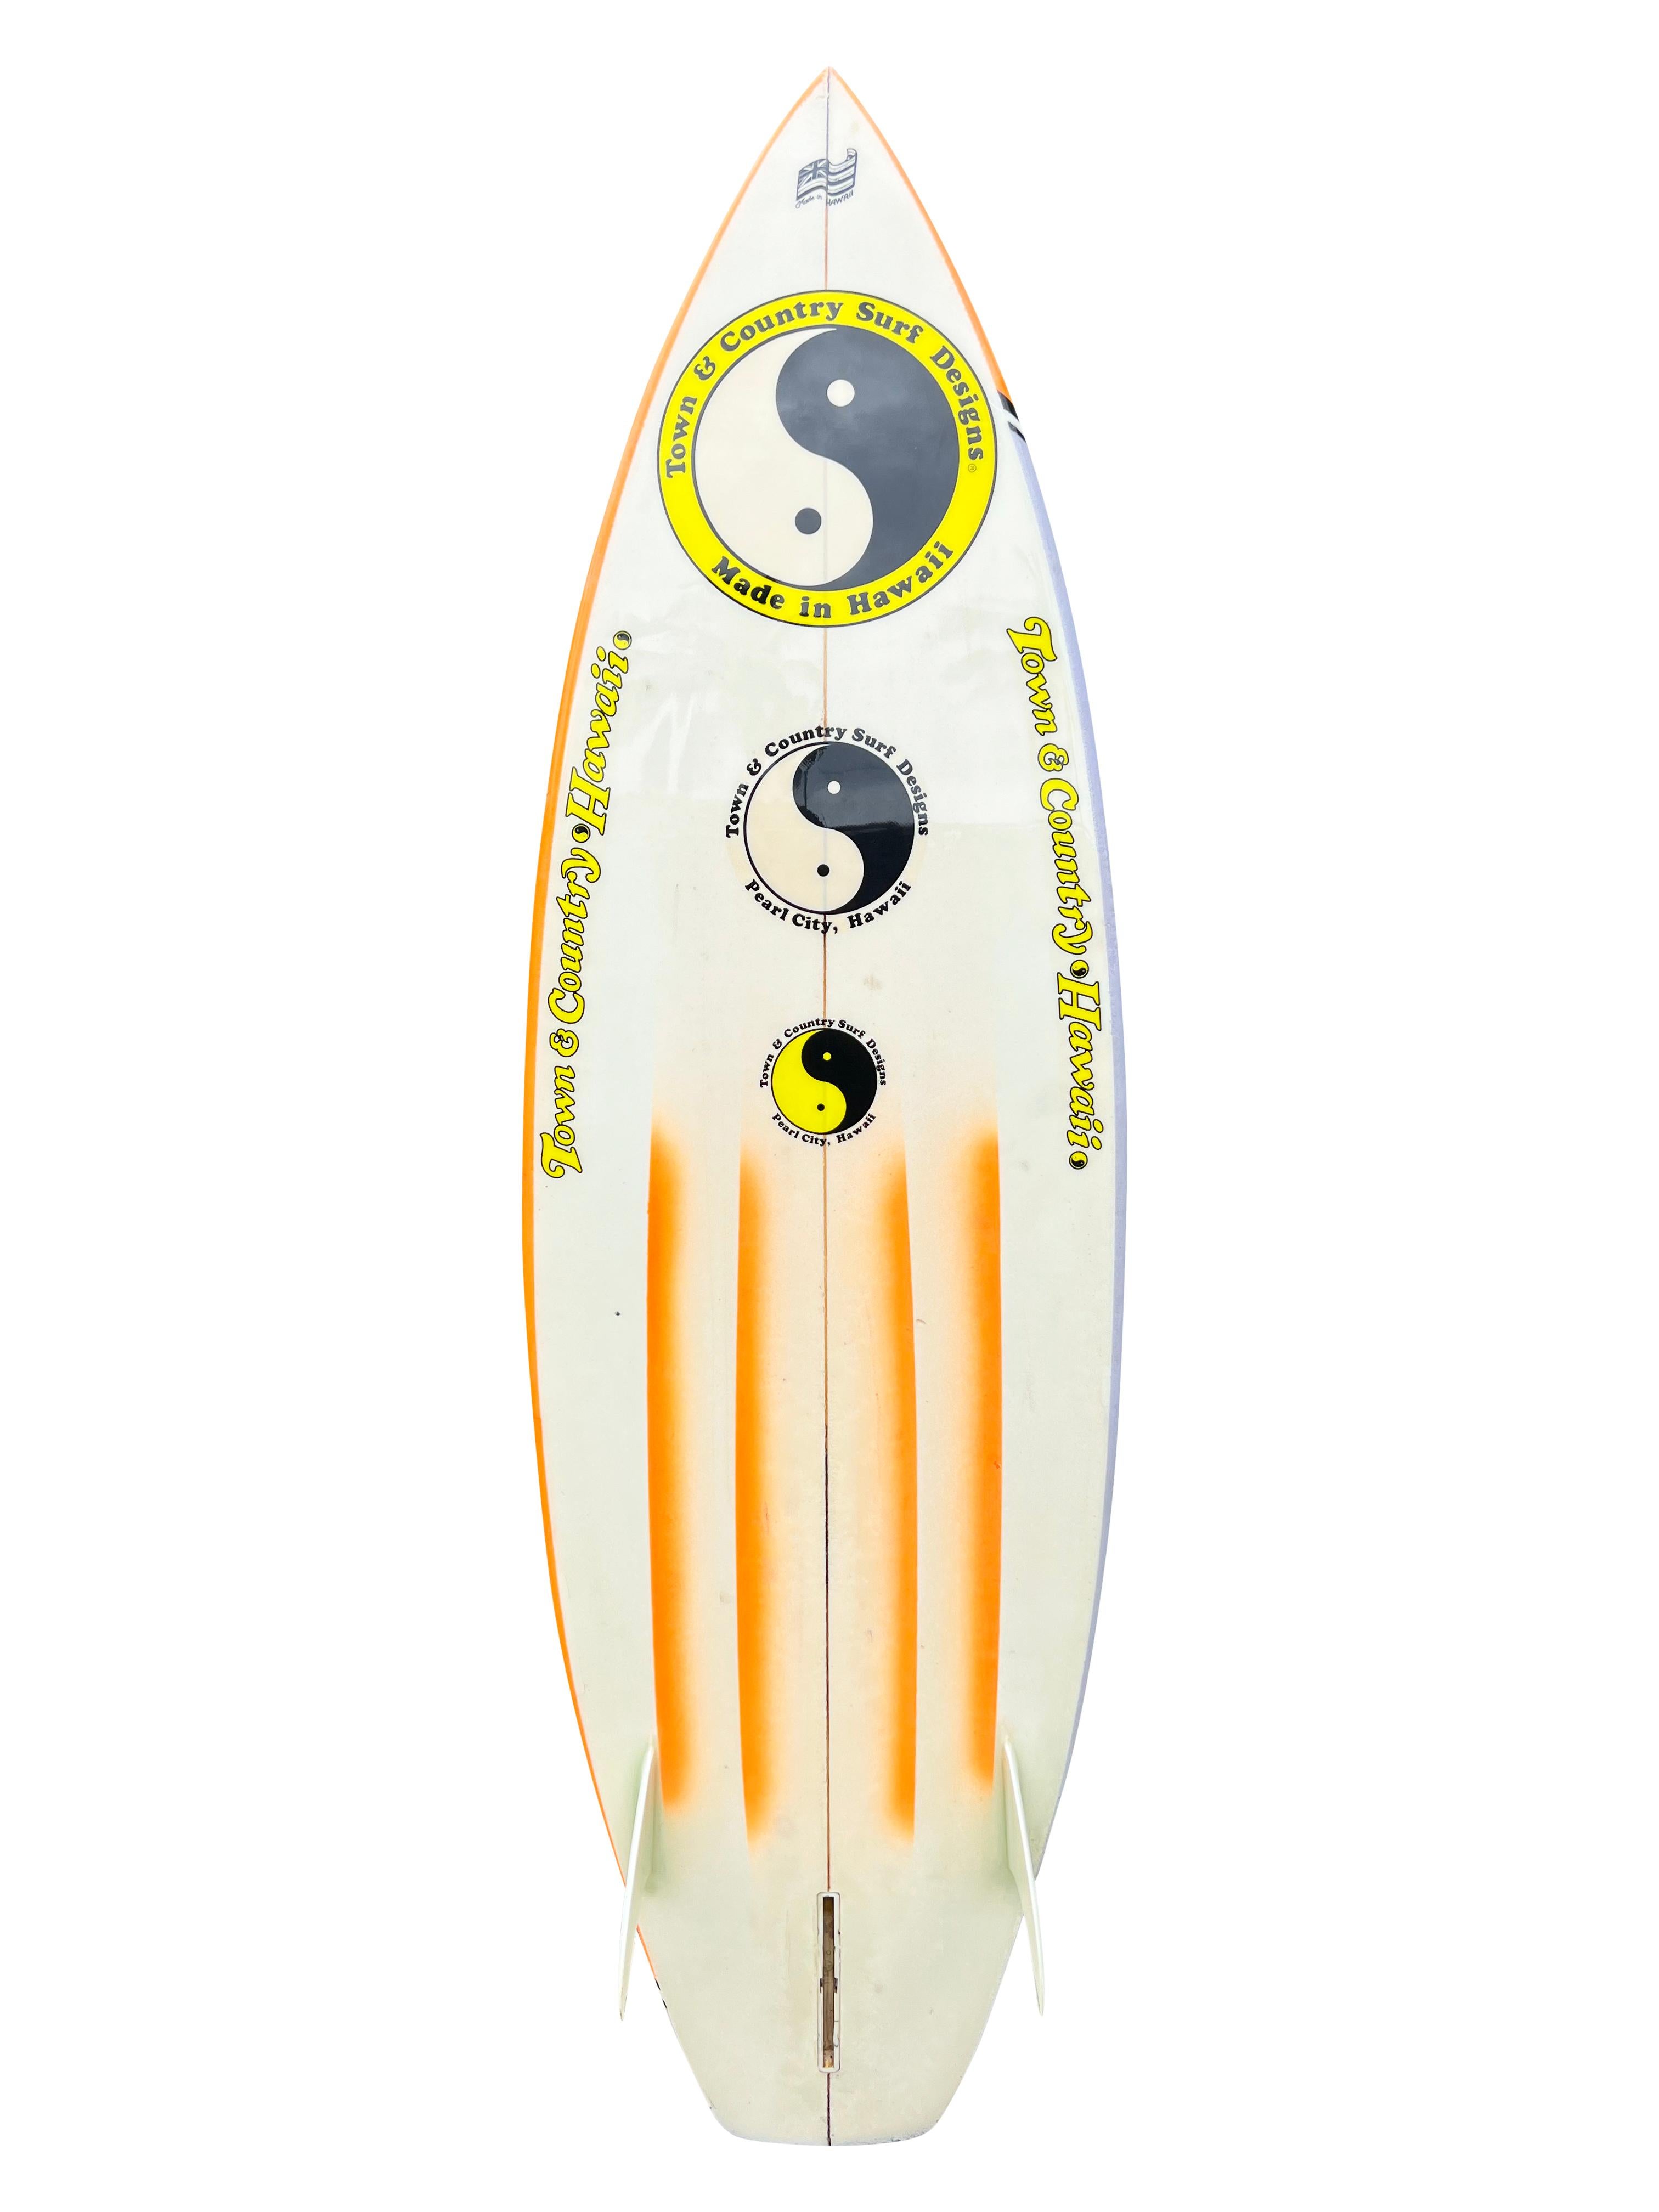 Planche de surf Townes & Country de 1983 fabriquée par Nev Hyman. Il est doté d'un remarquable design aérographe au style des années 1980. Queue de courge à fond de canal. Nev Hyman, fondateur et copropriétaire de FireWire Surfboards. FireWire est